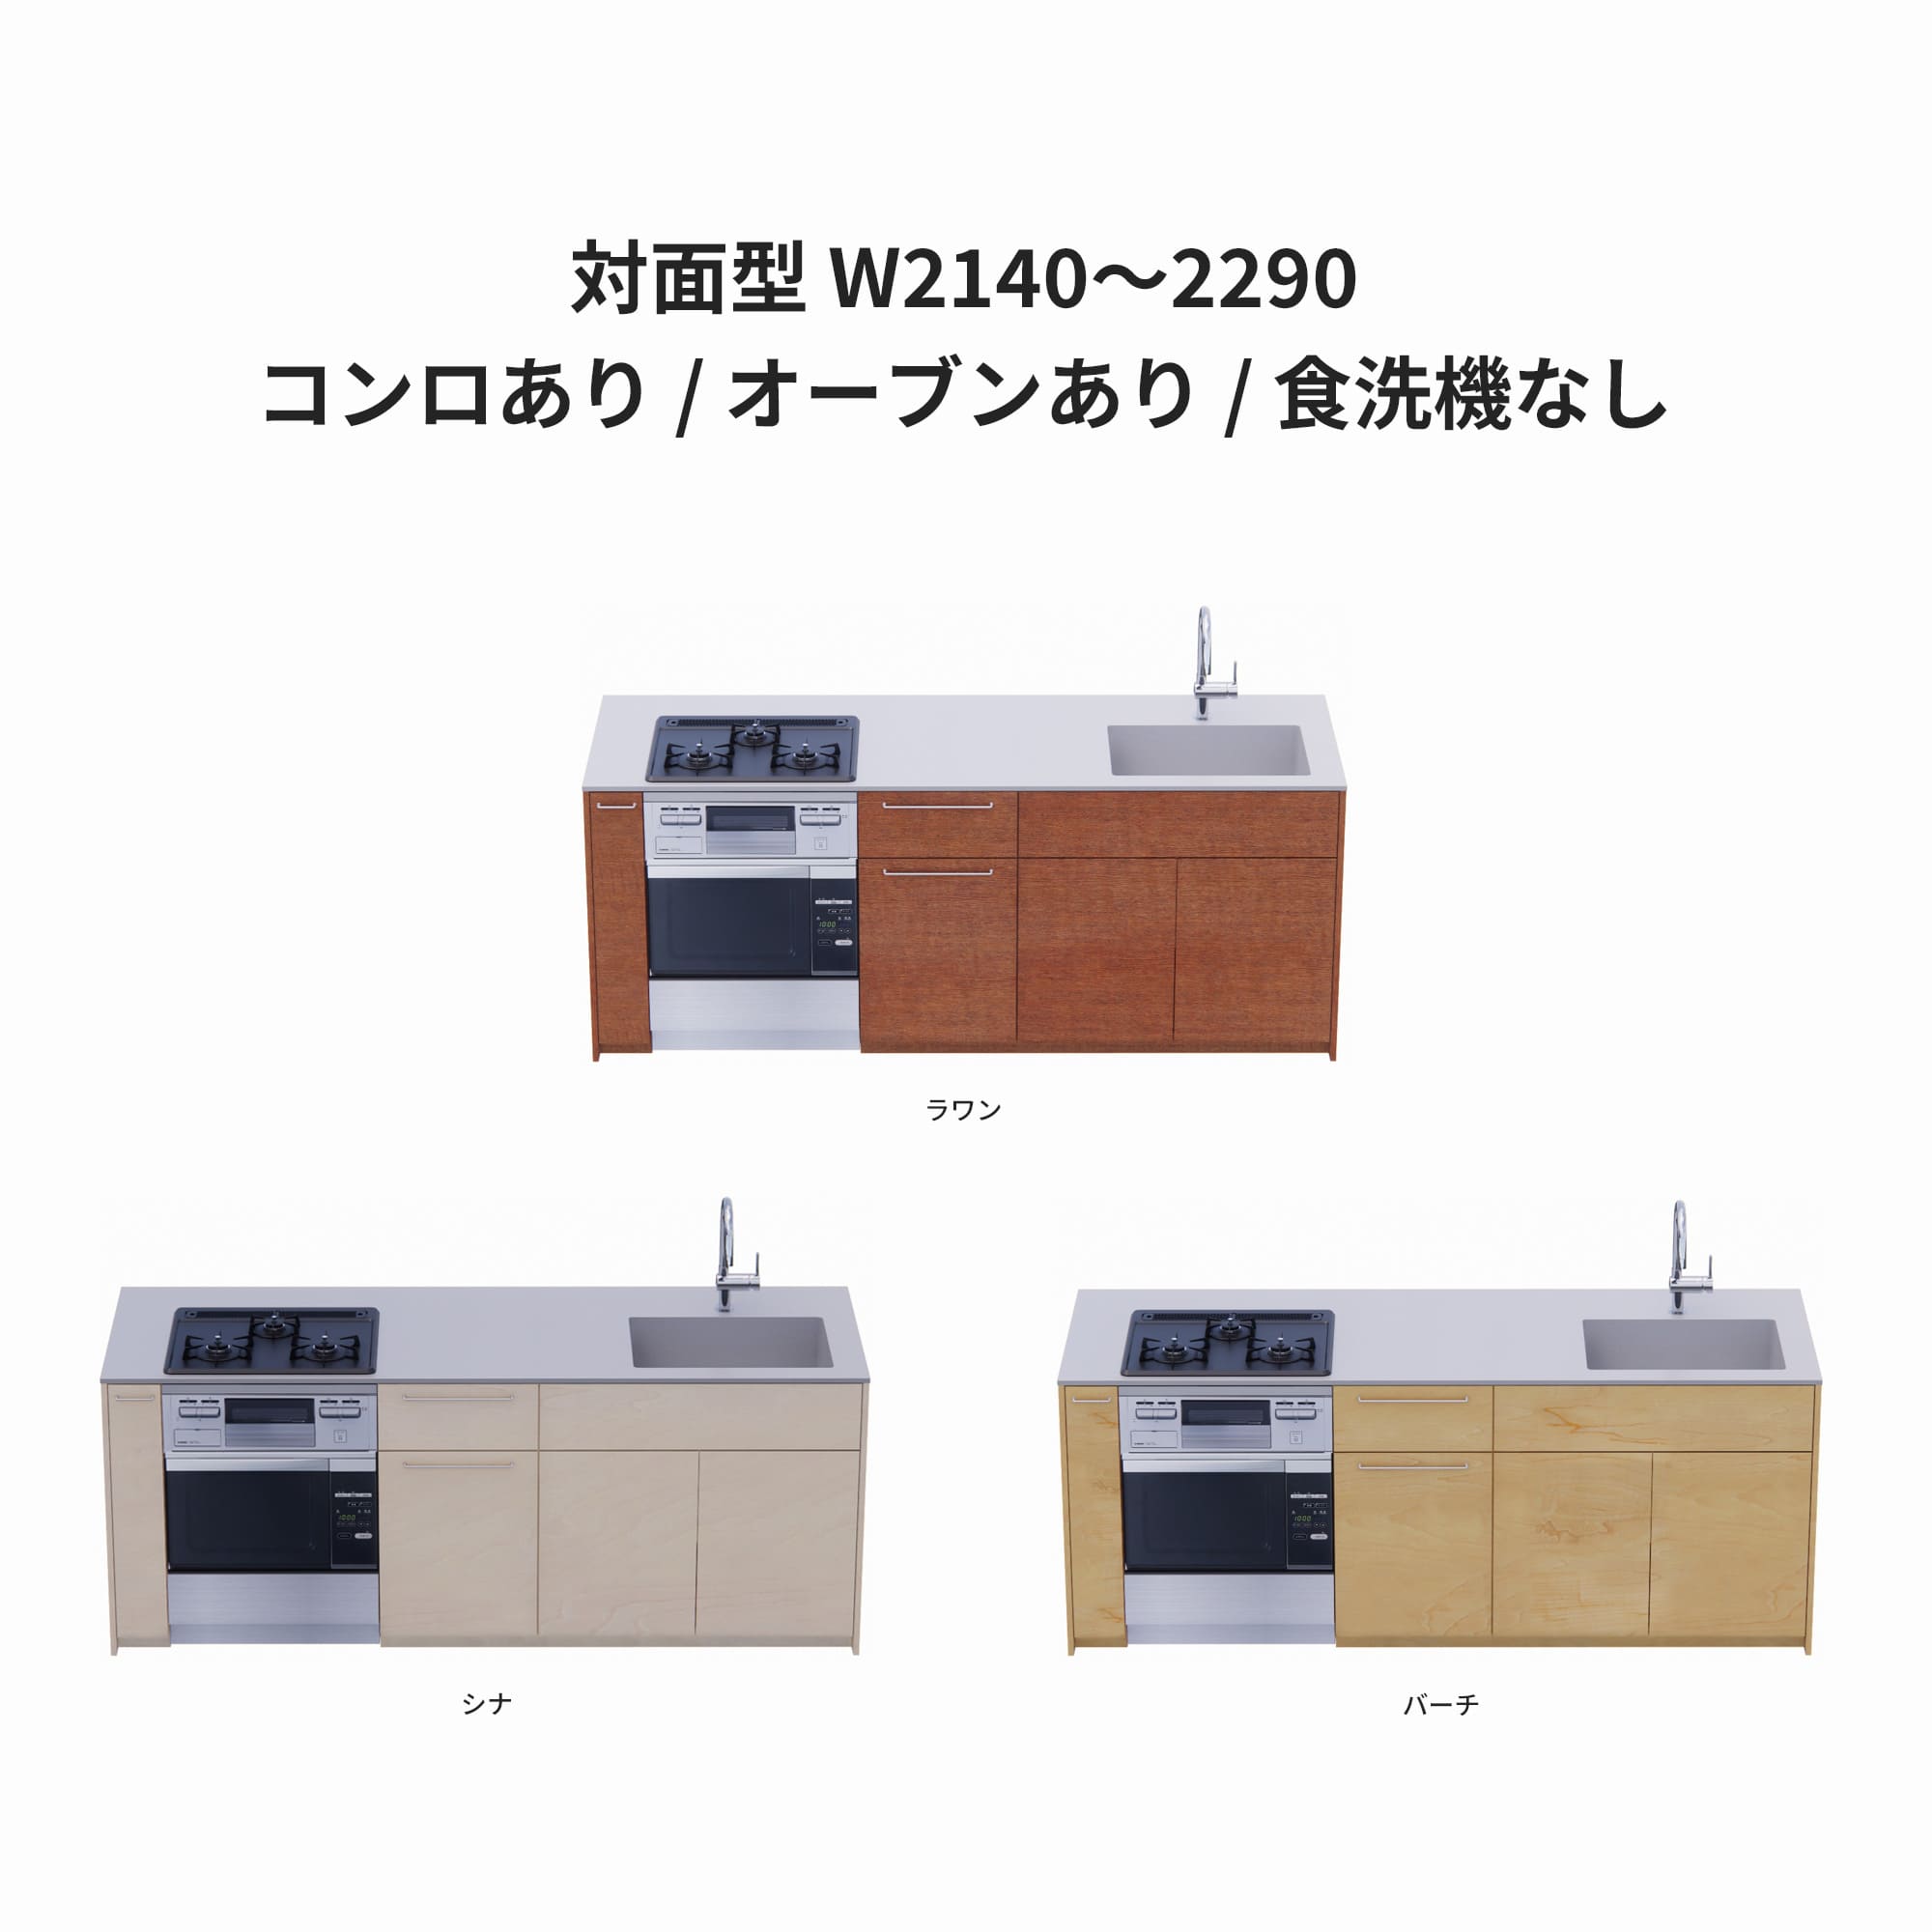 木製システムキッチン 対面型 W2140～2290・コンロあり / オーブンあり / 食洗機なし KB-KC022-37-G183 ラワン・シナ・バーチが選択できます